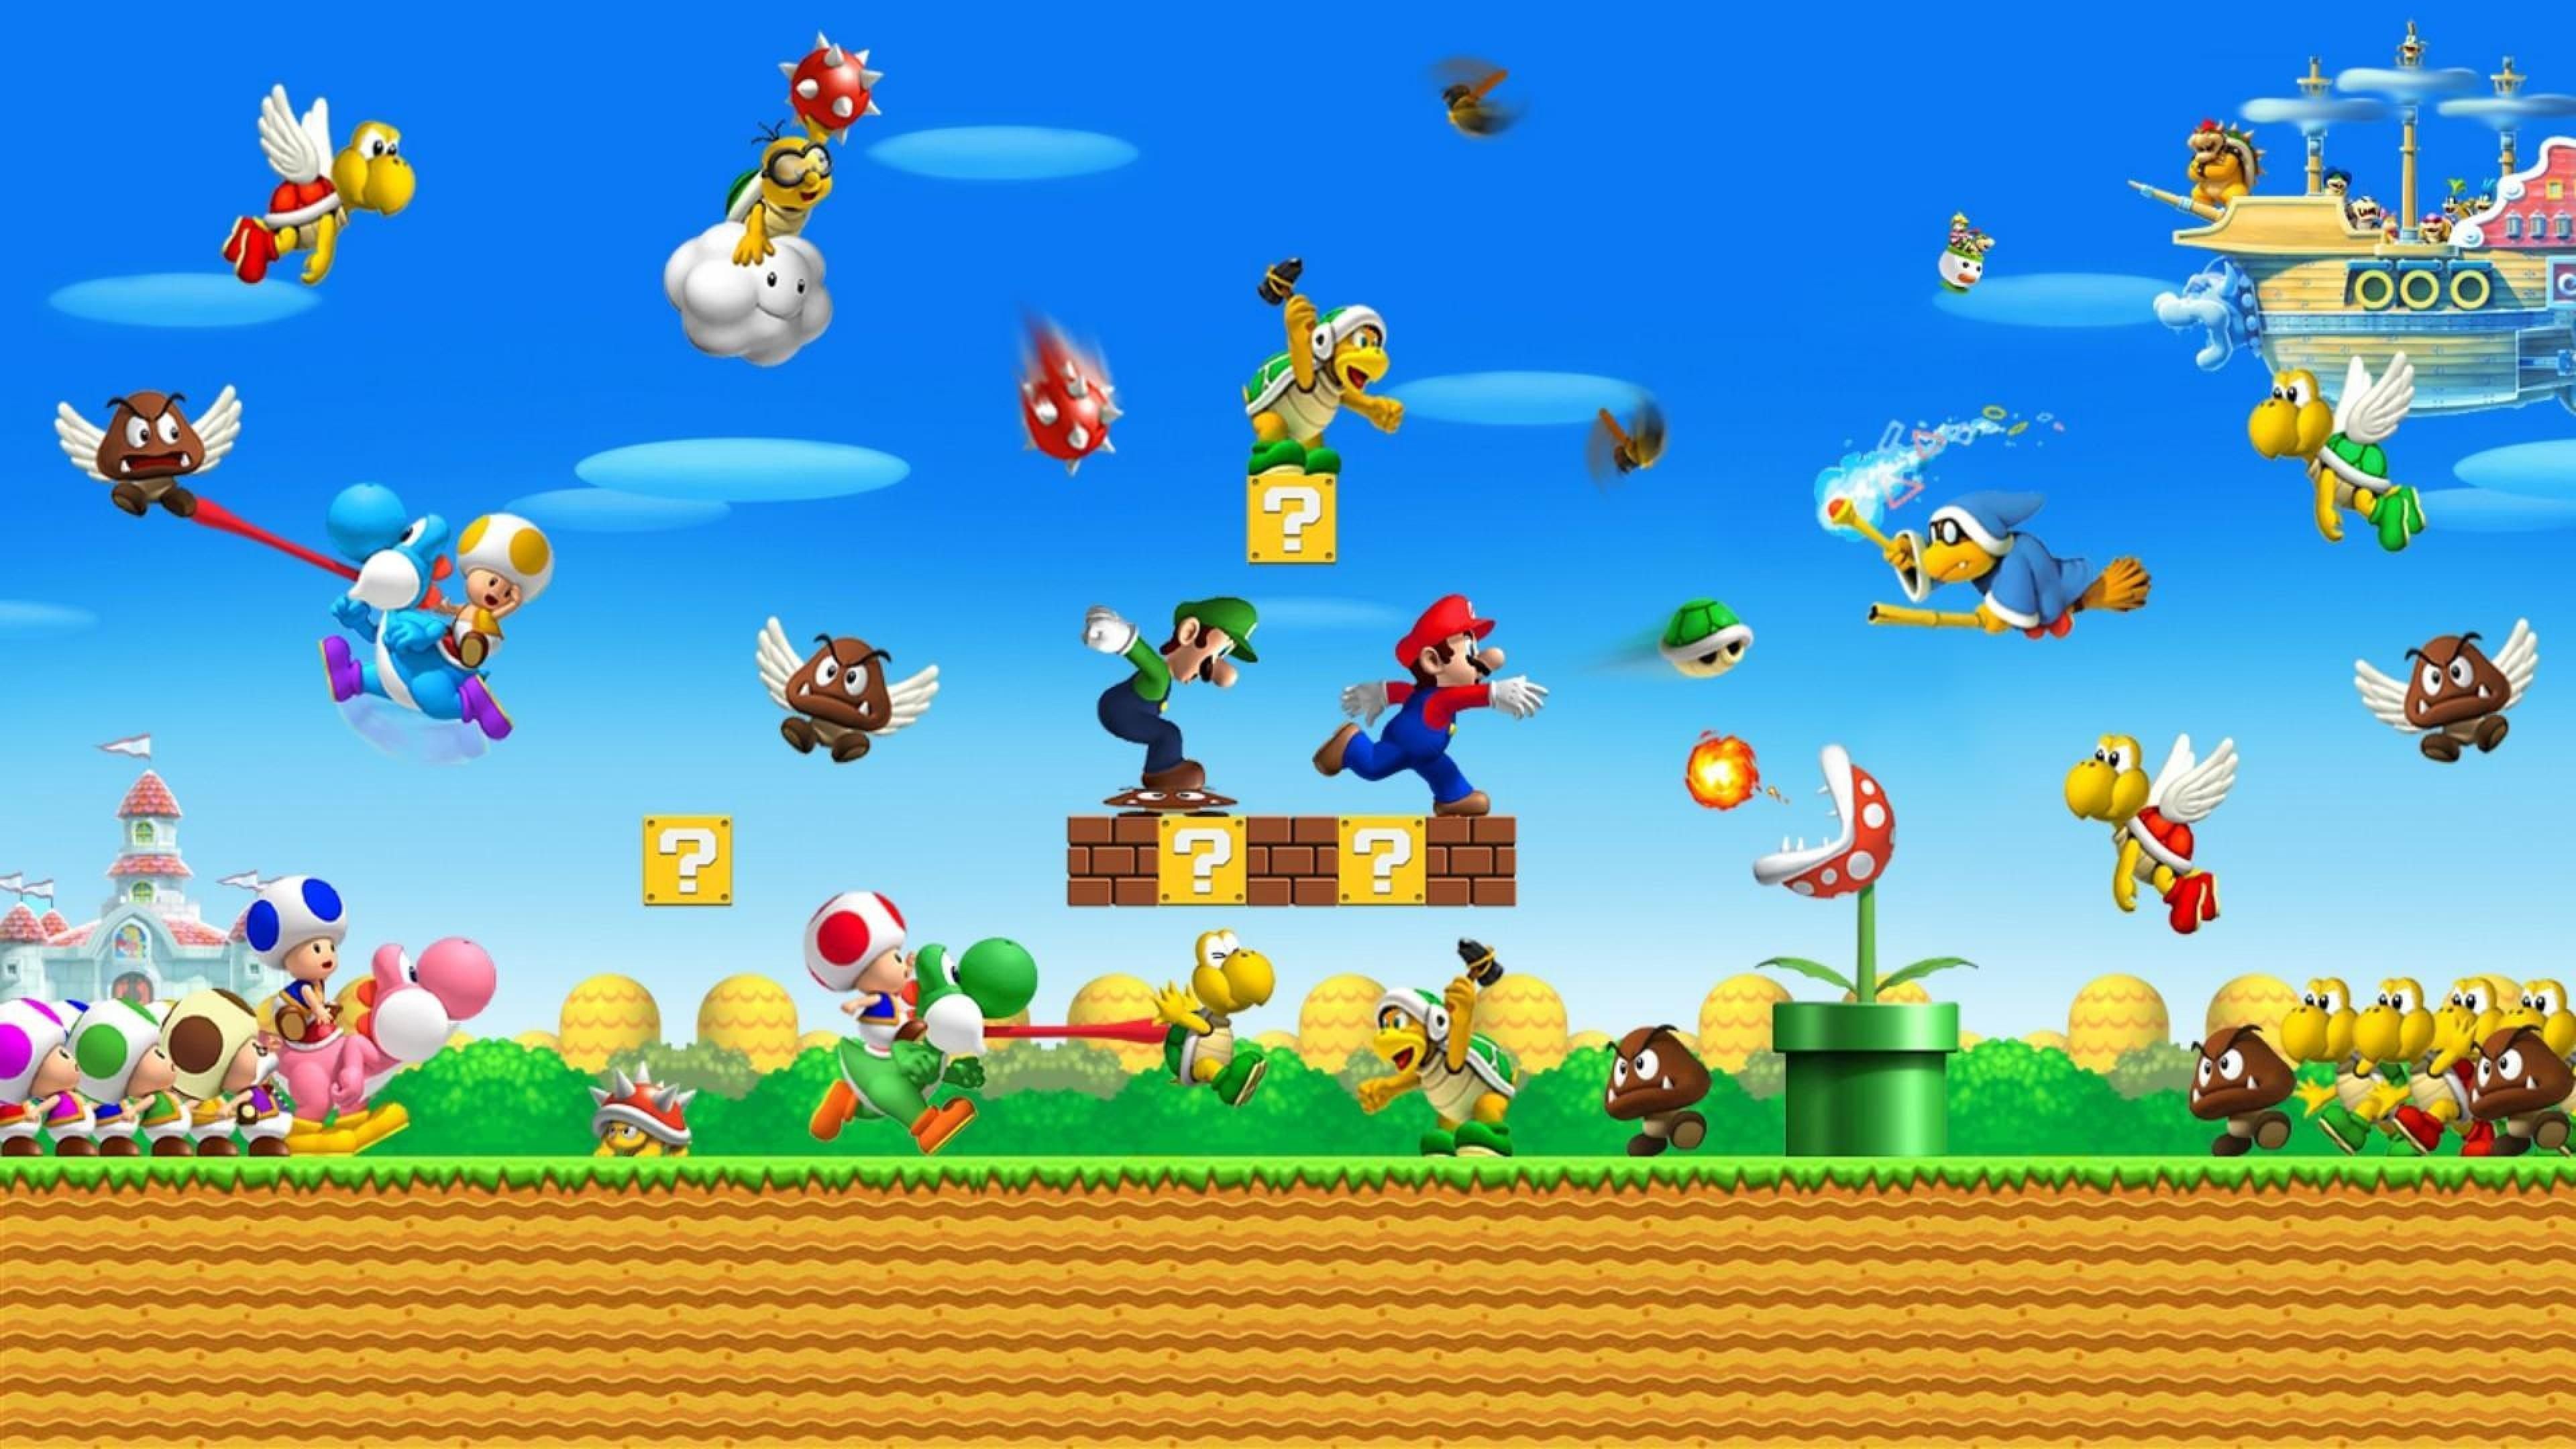 Bowser, Yoshi, HD wallpapers, Mario Bros games, Nintendo gaming, 3840x2160 4K Desktop